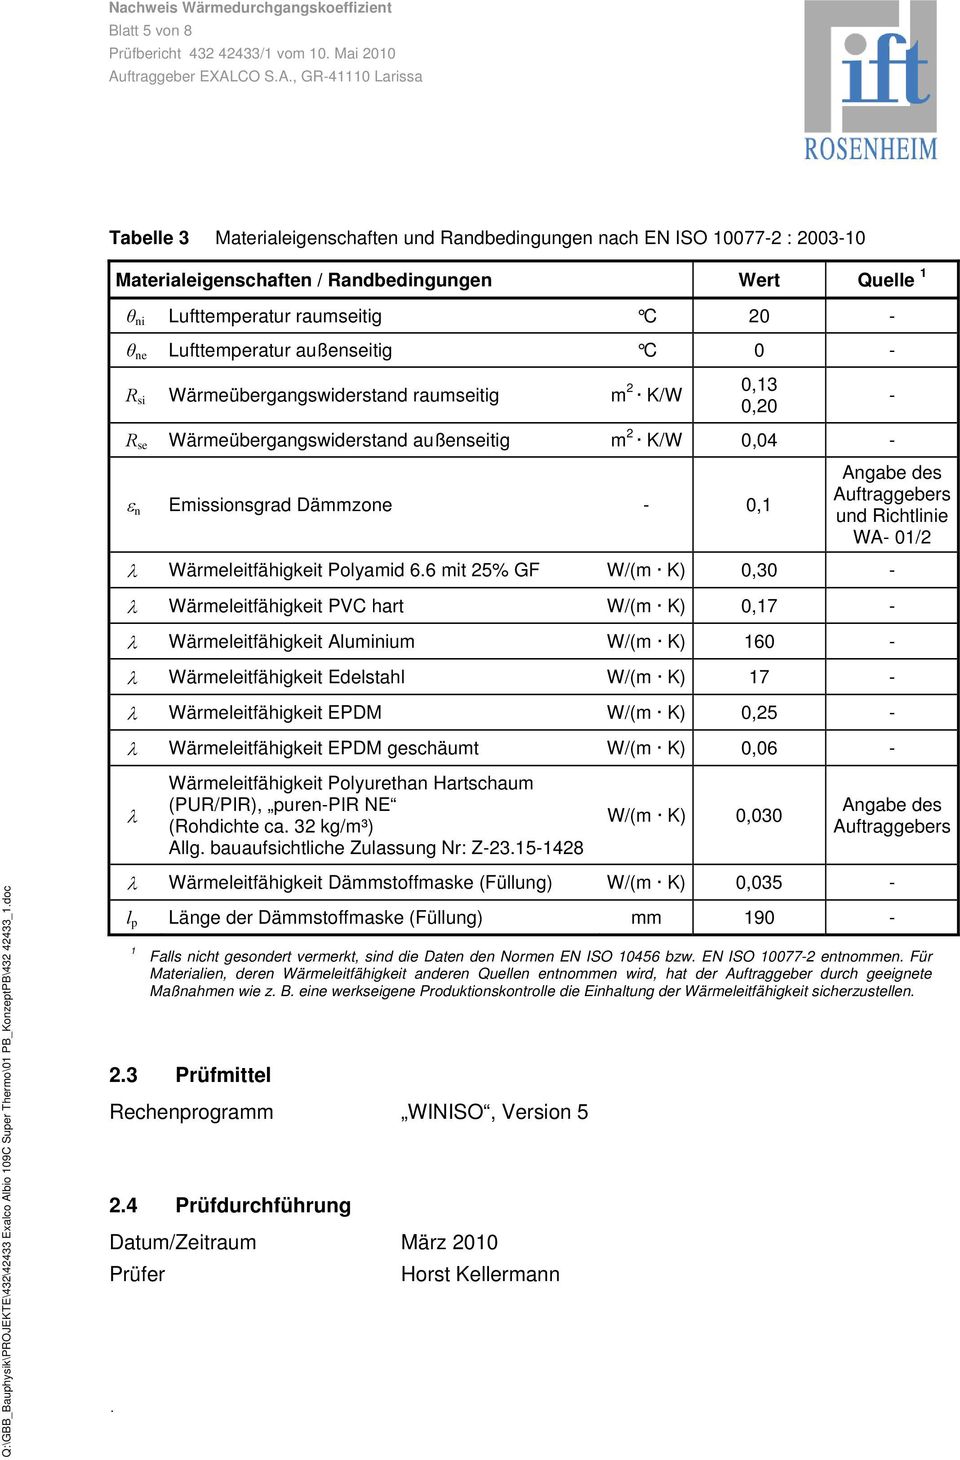 Auftraggebers und Richtlinie WA- 01/2 Wärmeleitfähigkeit Polyamid 6.